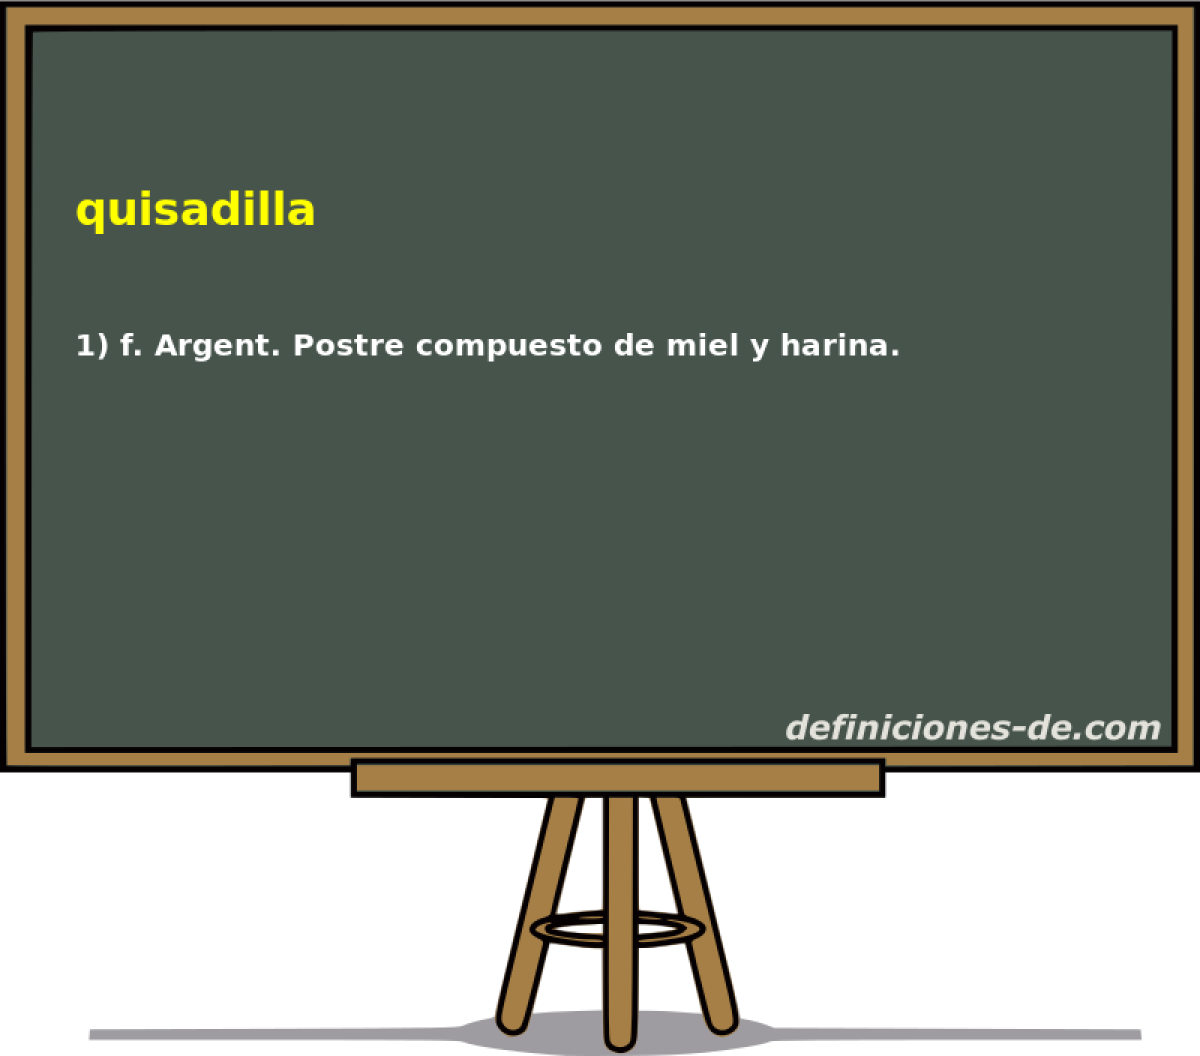 quisadilla 